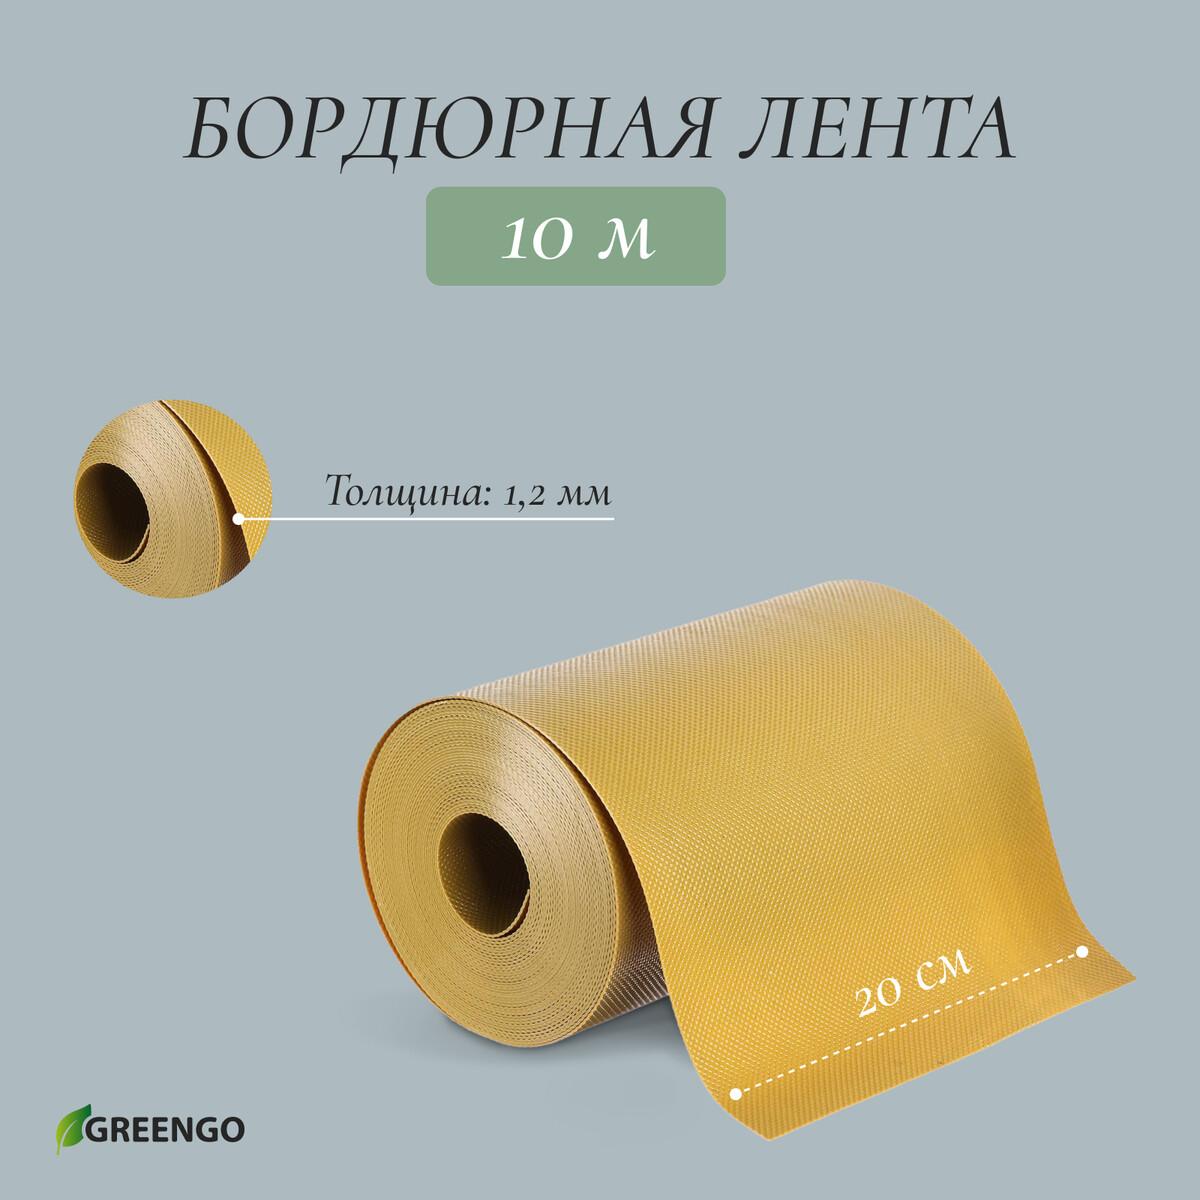 Лента бордюрная, 0.2 × 10 м, толщина 1.2 мм, пластиковая, желтая, greengo лента бордюрная 0 2 × 9 м толщина 1 2 мм пластиковая фигурная коричневая